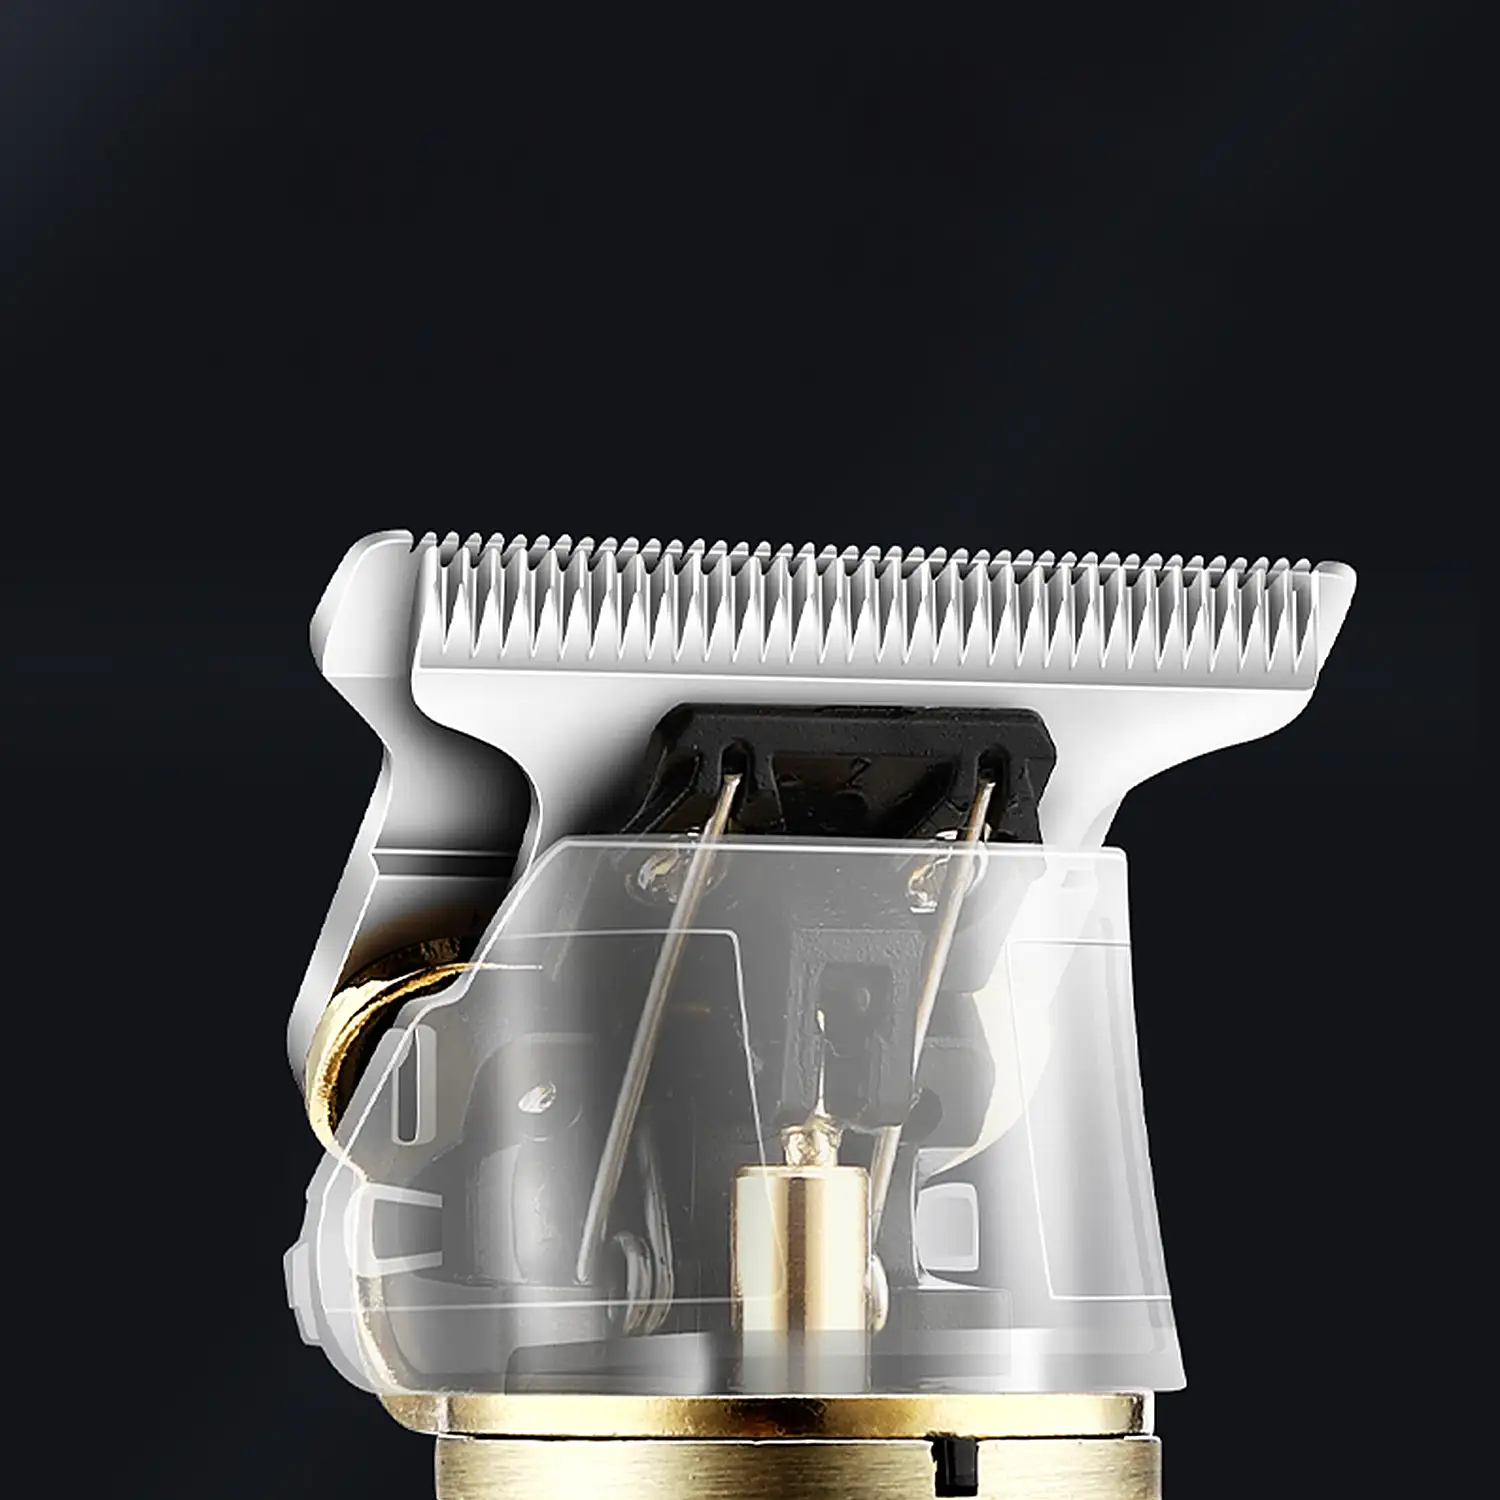 Recortador perfilador para pelo y barba LM-800. Diseño vintage completamente metálico. Con peines de 1 a 4mm y juego de accesorios. Batería recargable.